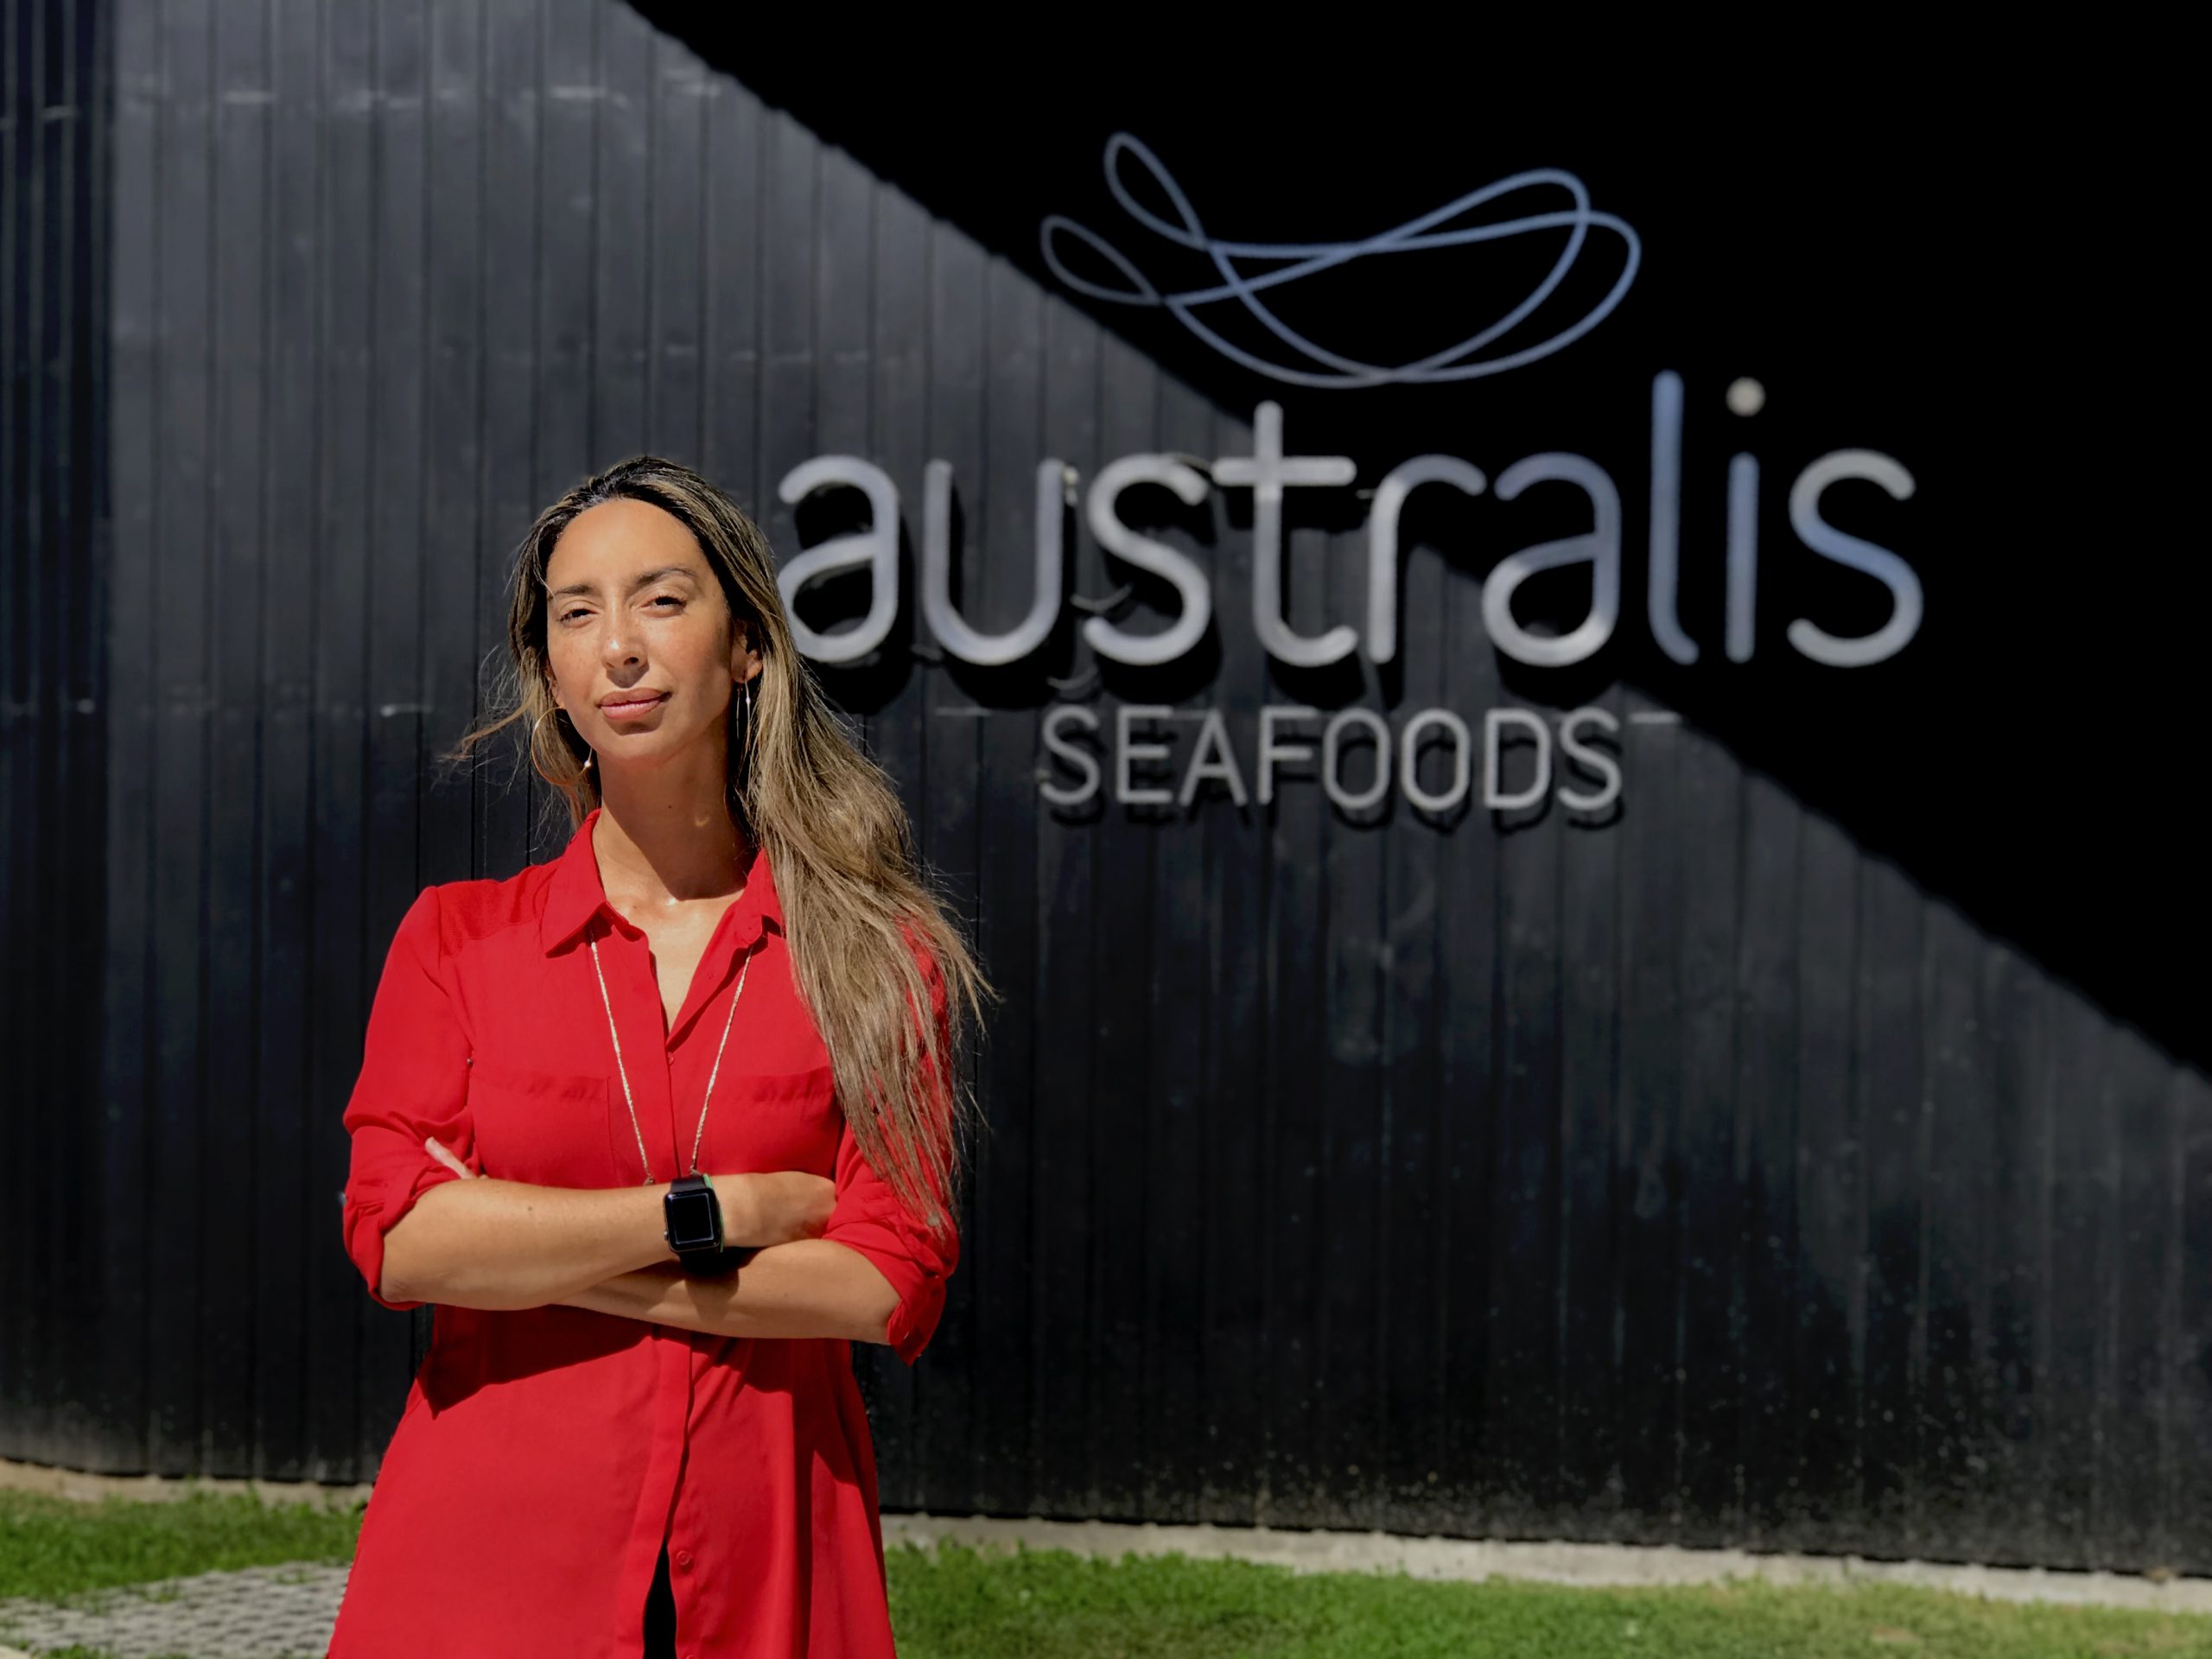 [LO MÁS LEÍDO EL VIERNES] Josefina Moreno: El trabajo de Australis Seafoods por avanzar en equidad de género